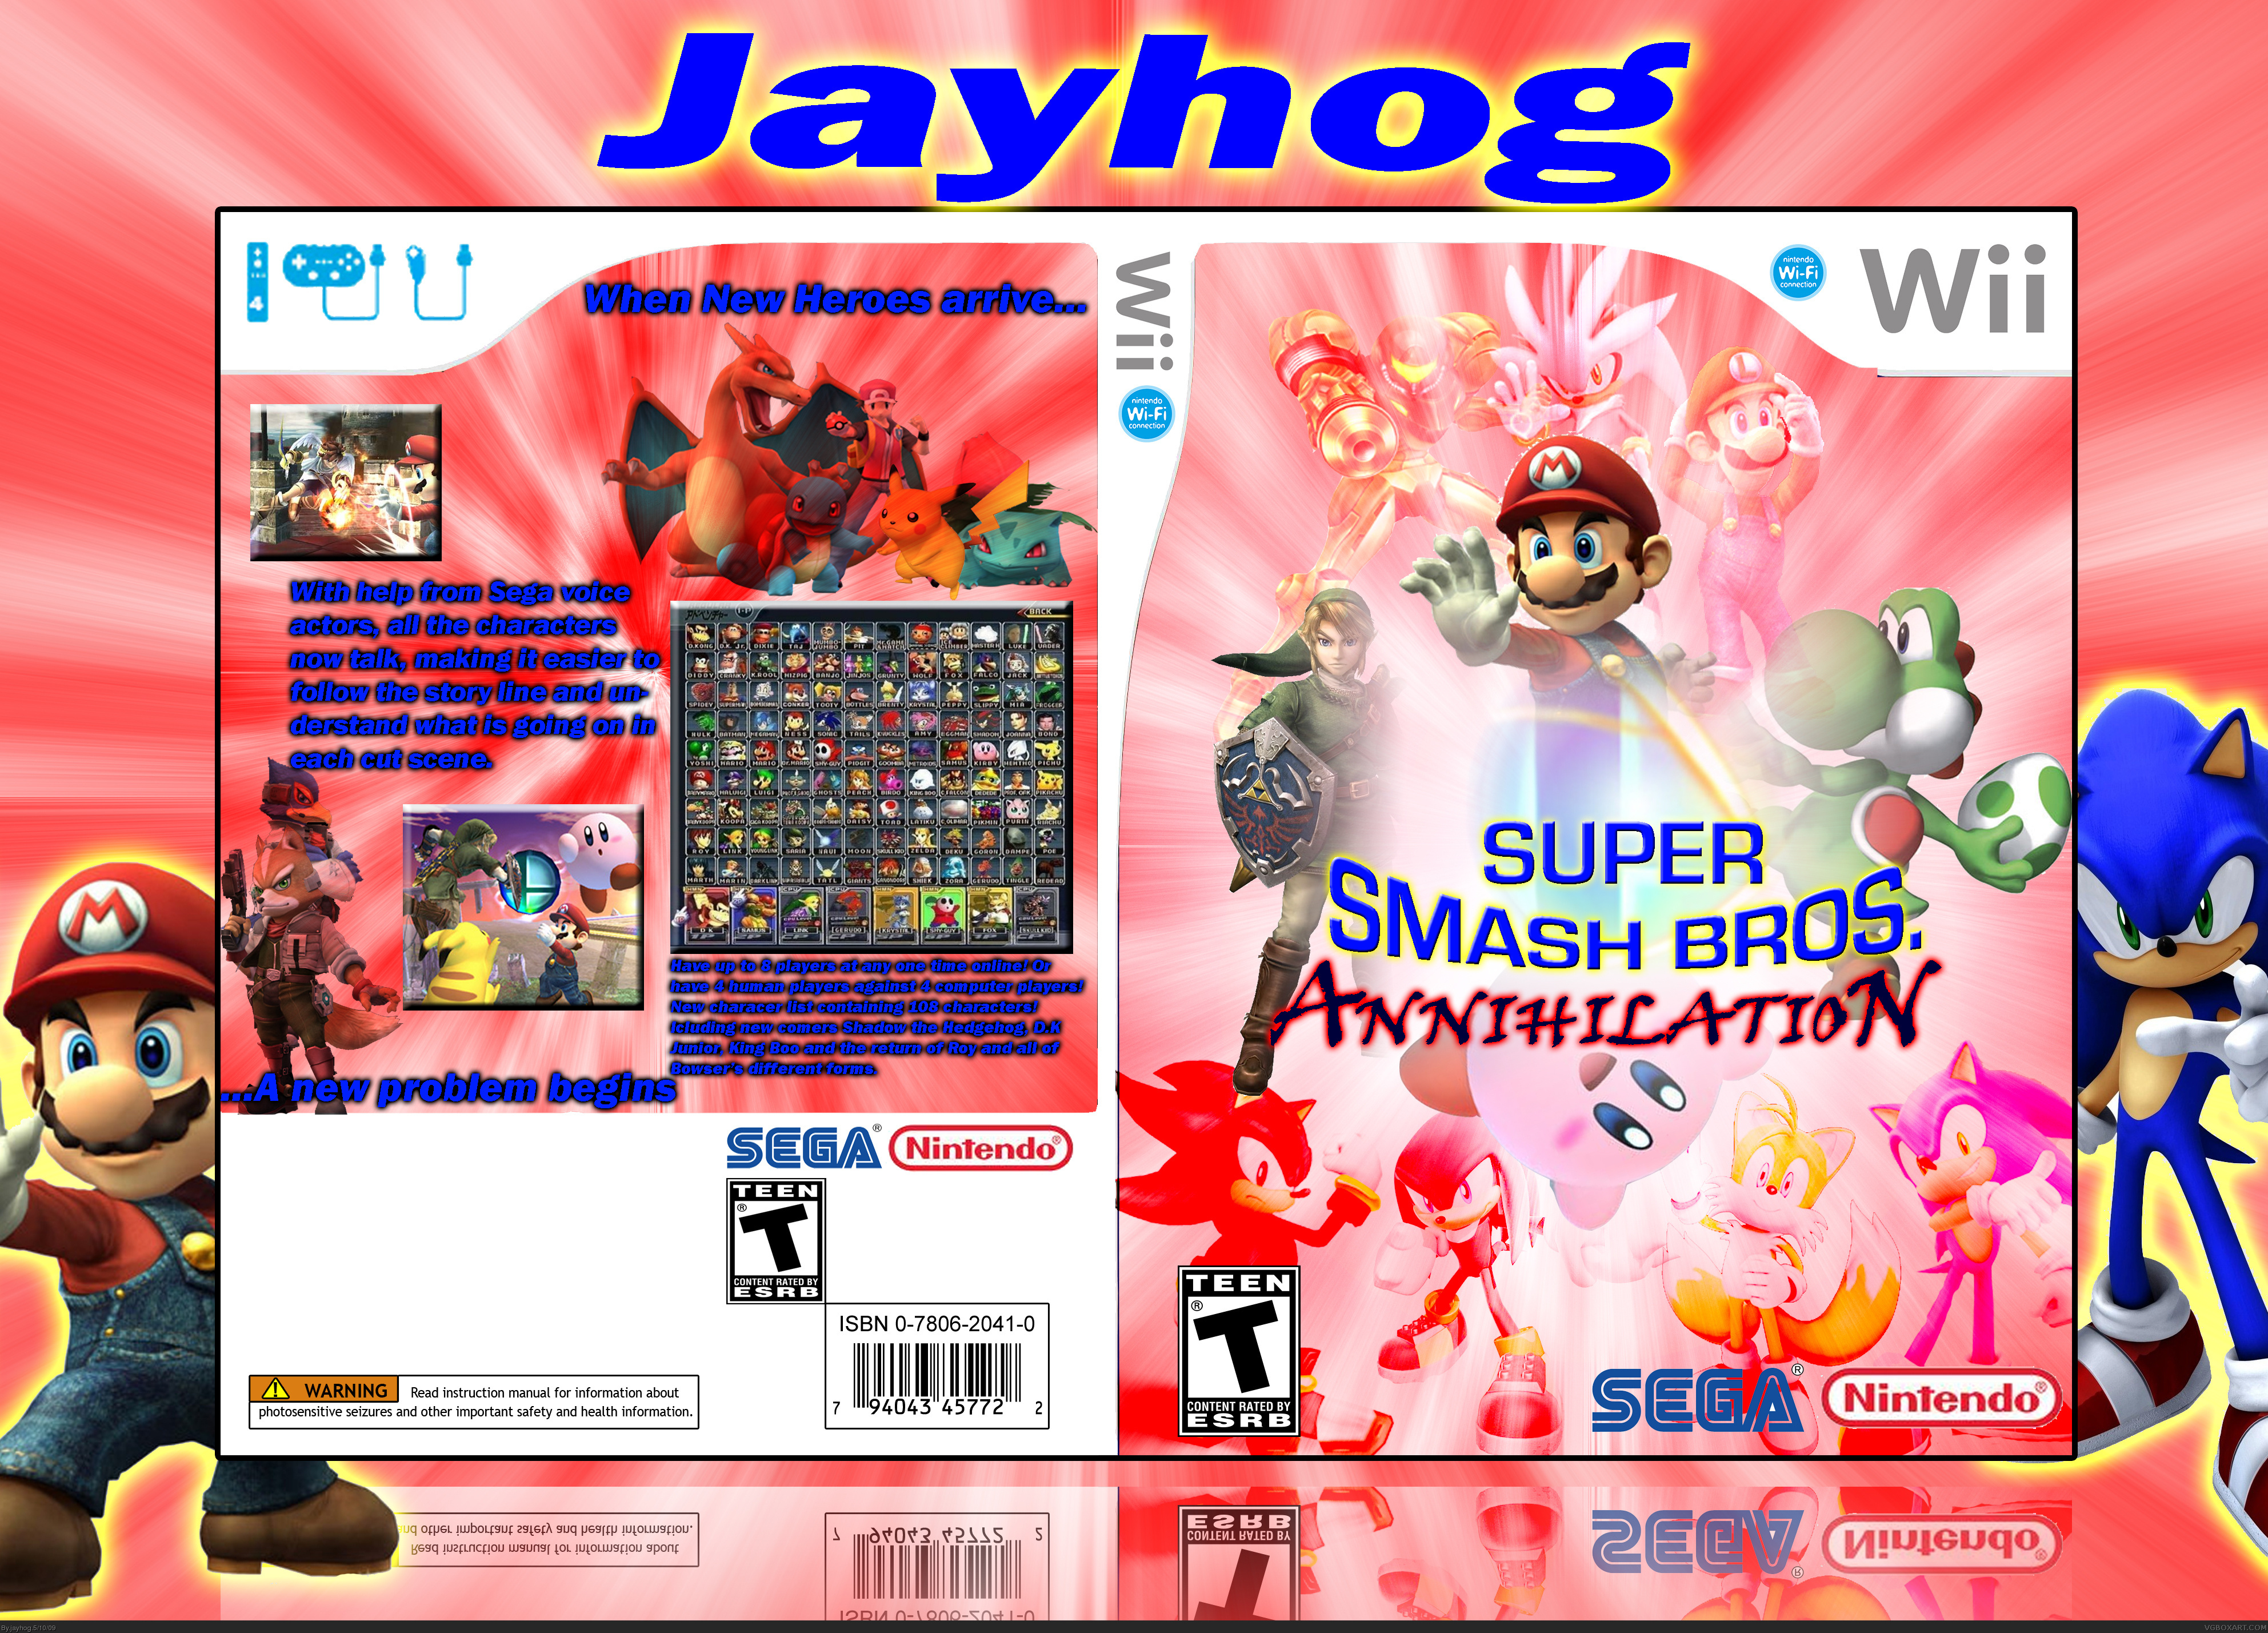 Super Smash Bros. Annihilation box cover